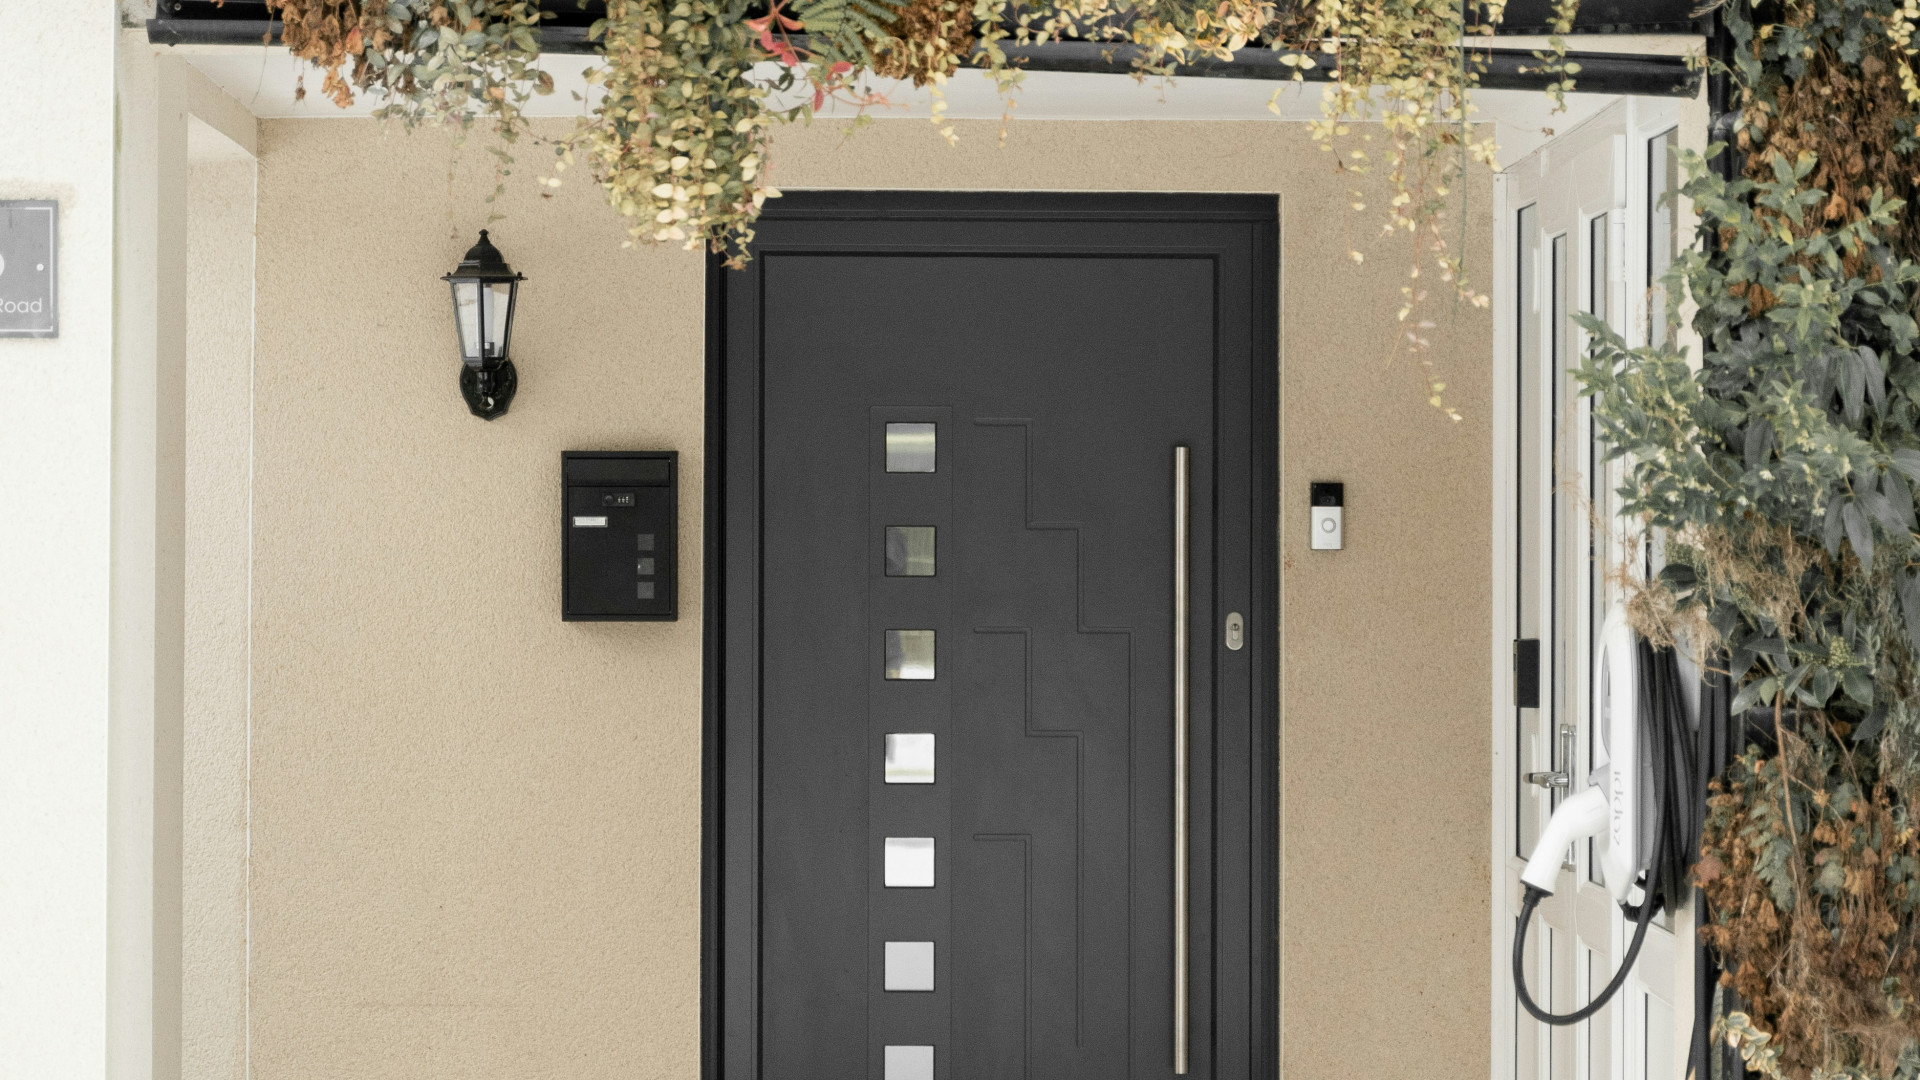 Donnez du cachet à votre maison avec une porte d'entrée originale !